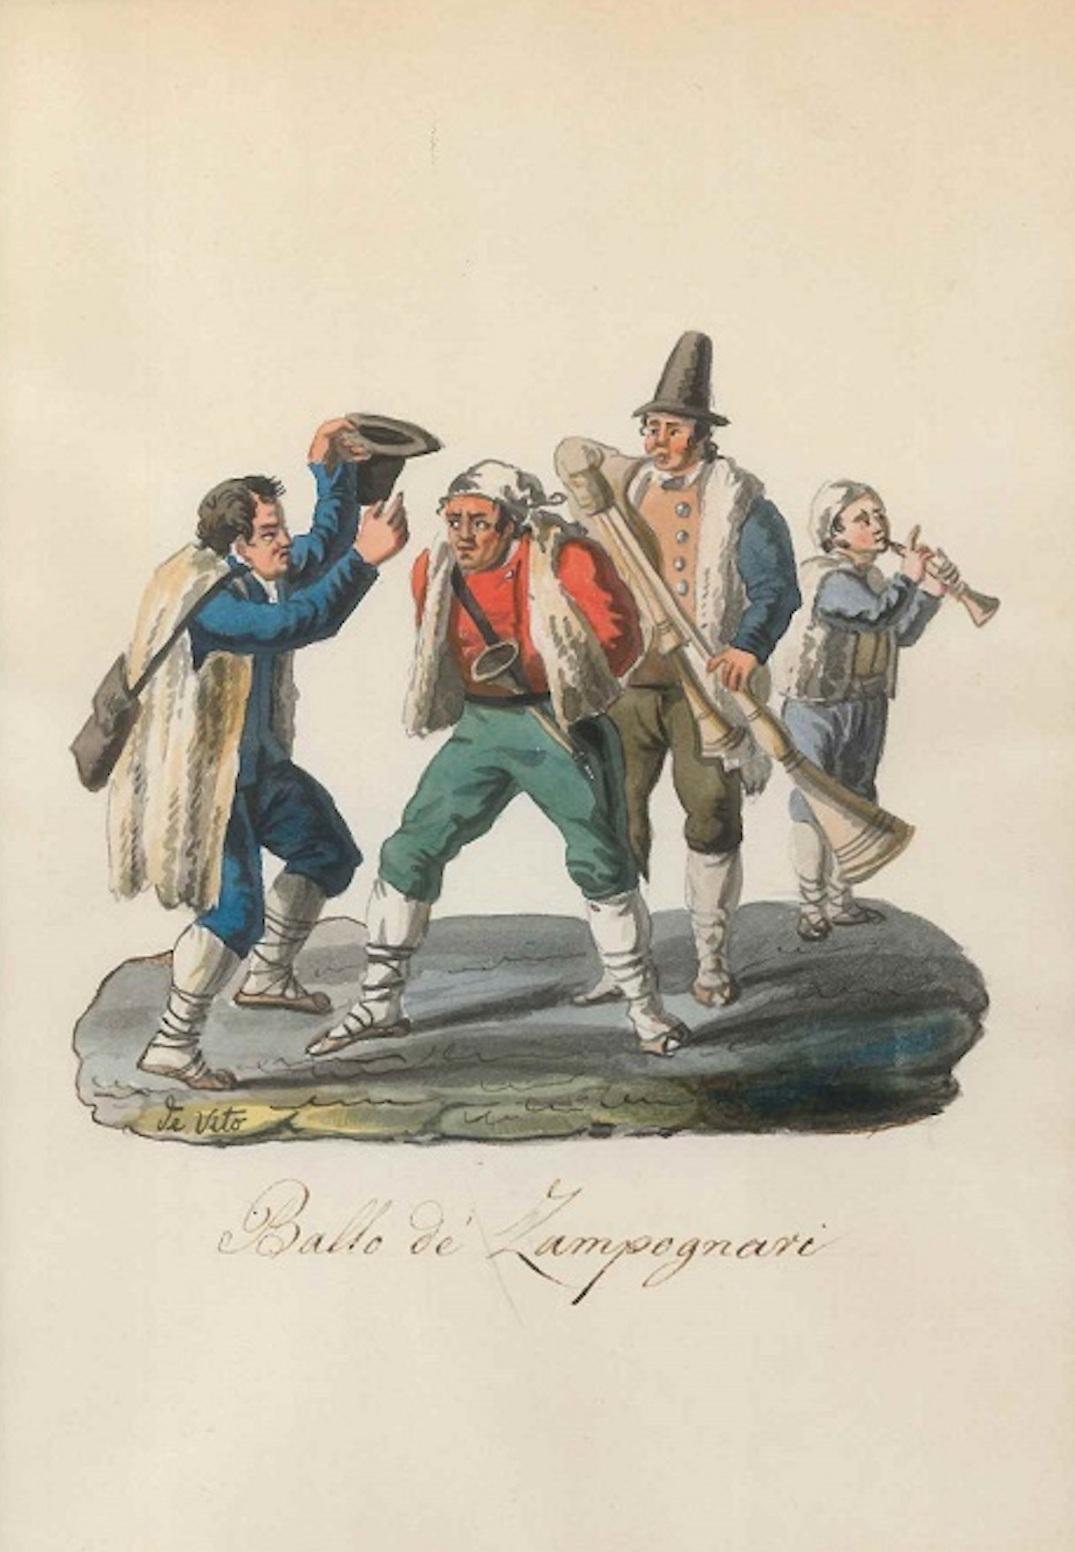 Ballo de' Zampognari - Watercolor by M. De Vito - 1820 ca.